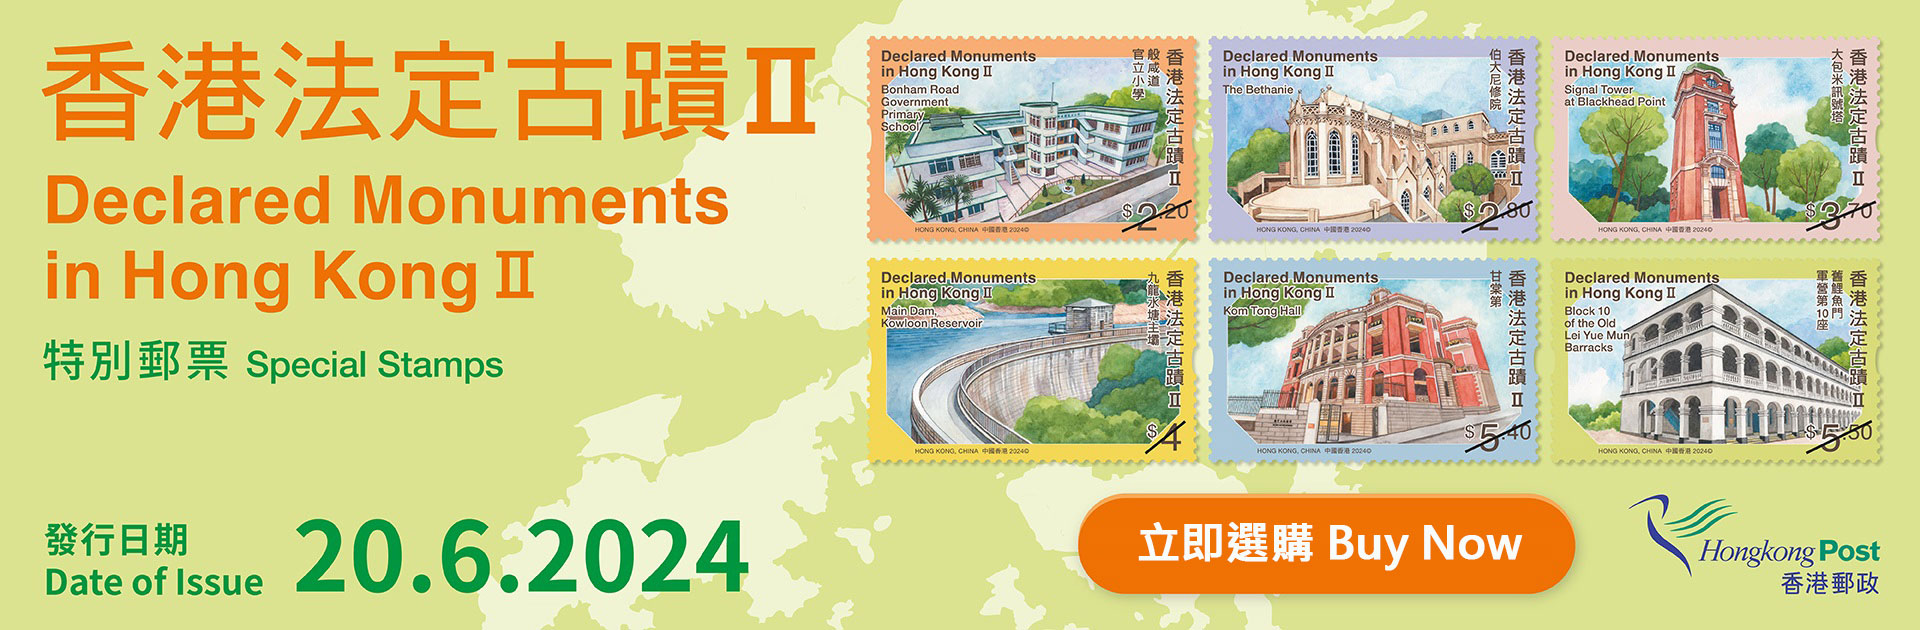 「香港法定古蹟II」特別郵票